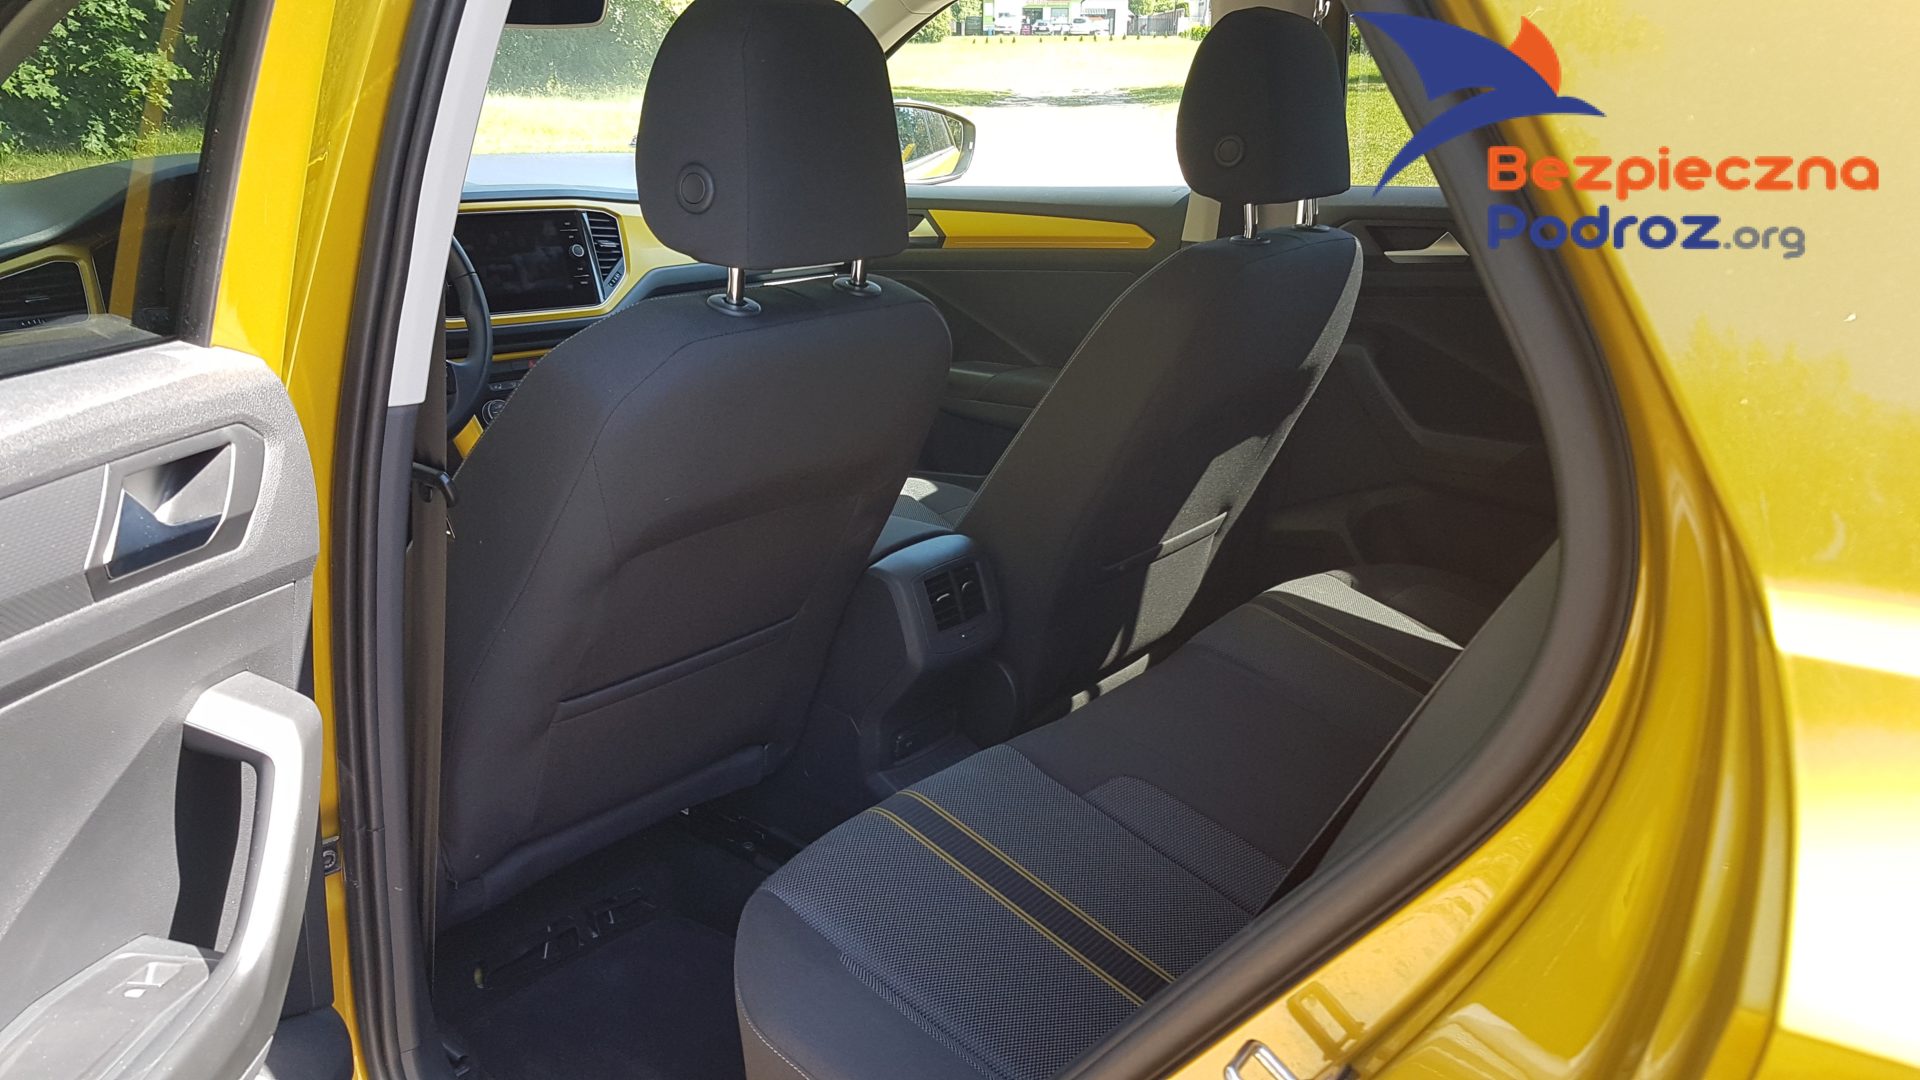 VW TRoc TSI 150KM Babskim Okiem Radio Bezpieczna Podróż